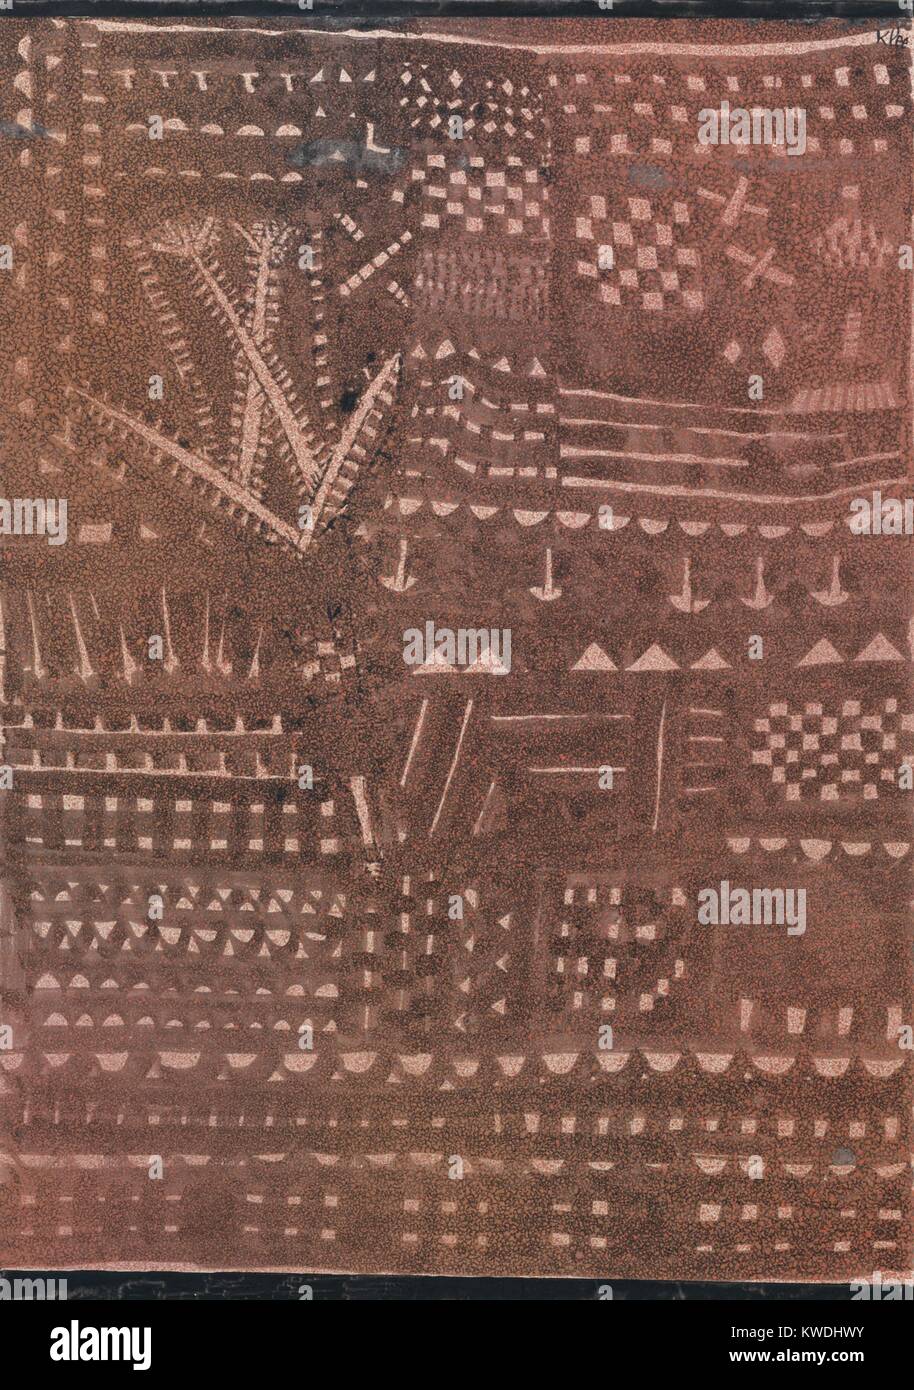 Nel modo di tappezzeria in pelle, di Paul Klee, 1925, Swiss disegno, inchiostro e tempera su carta. Pittura opener rosso e marrone a lavare, ha vari patterns ritmici di carta non verniciata (BSLOC 2017 7 64) Foto Stock